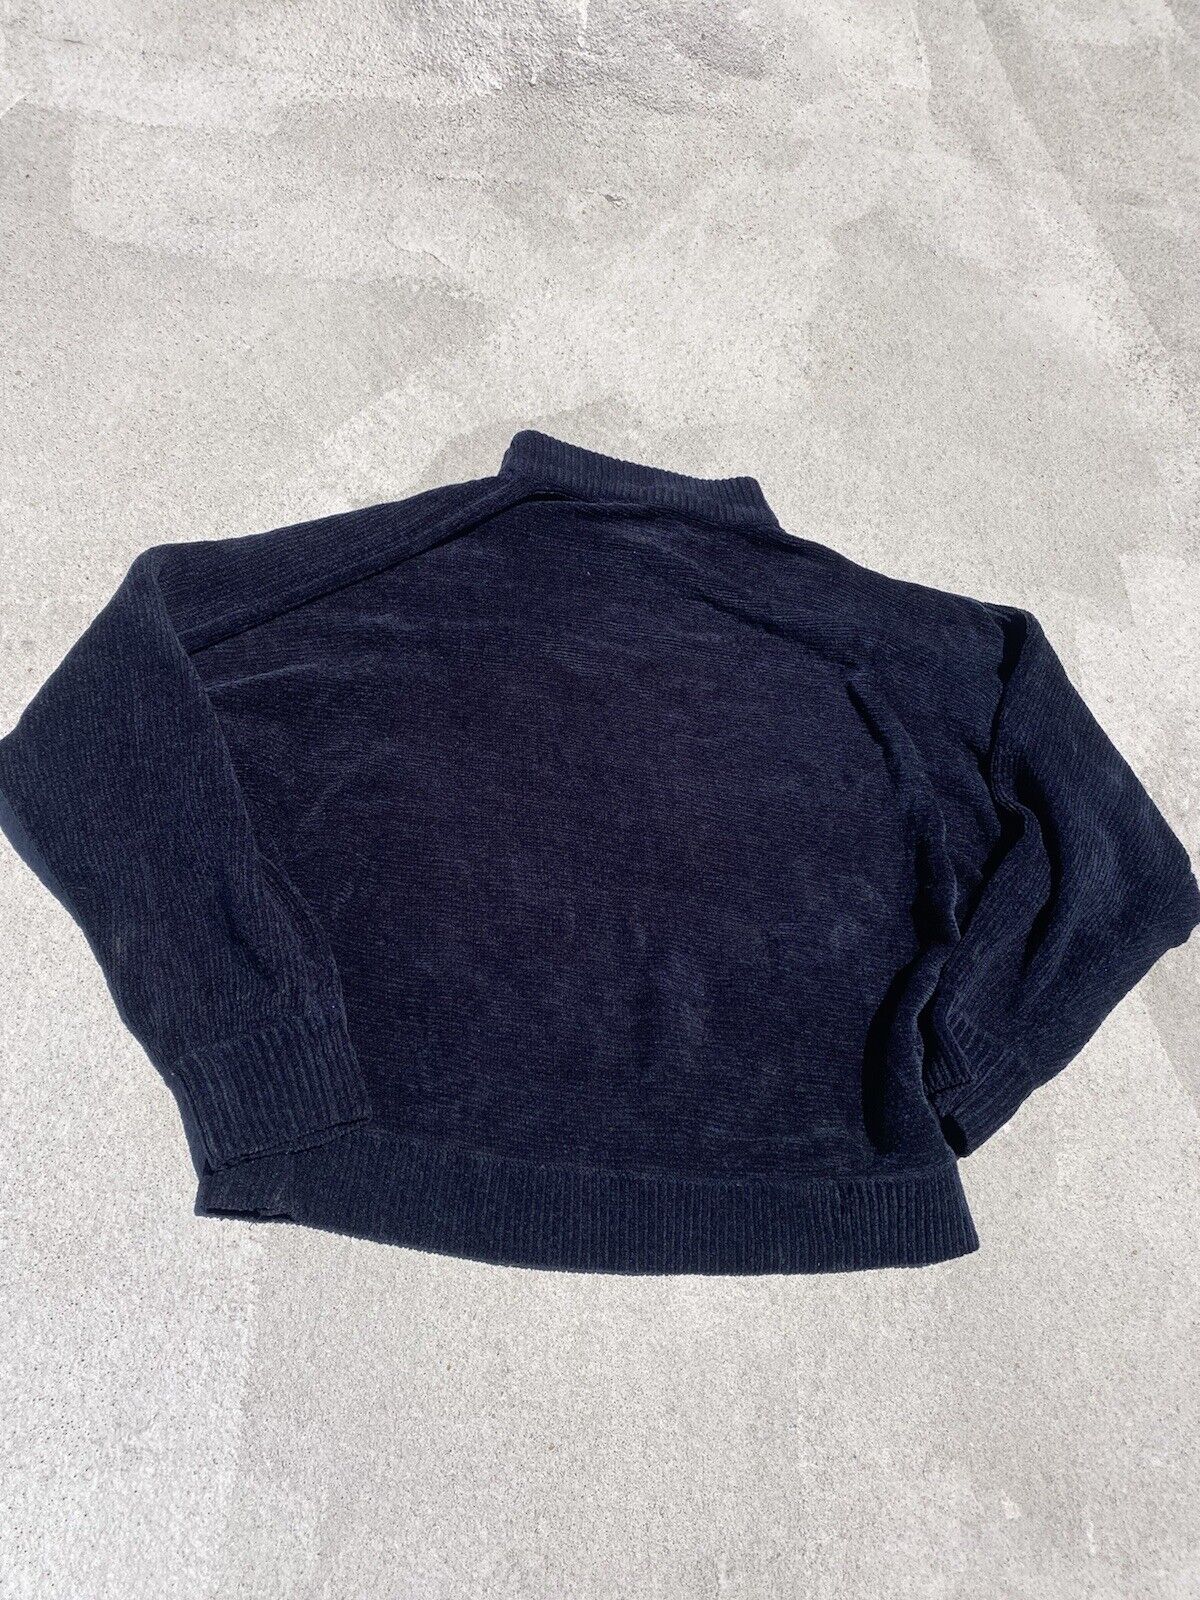 Black Velour Mock Neck Sweater - Unbranded - Women’s Medium